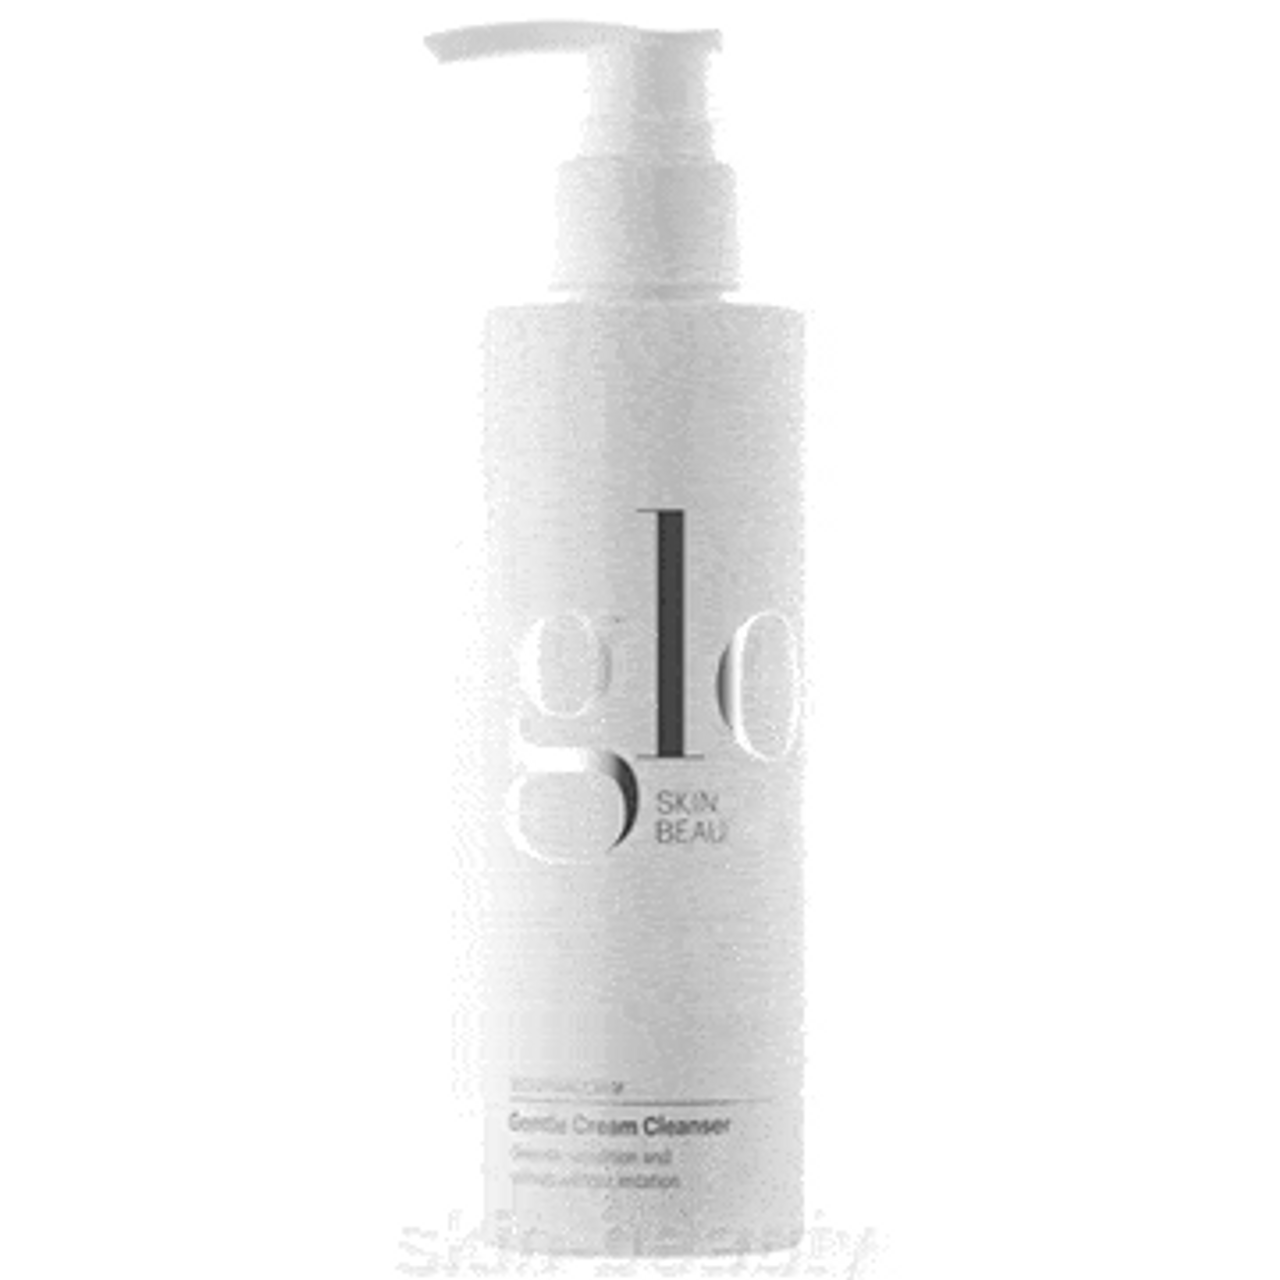 Glo Skin Beauty Gentle Cream Cleanser - 6.7 oz (644)